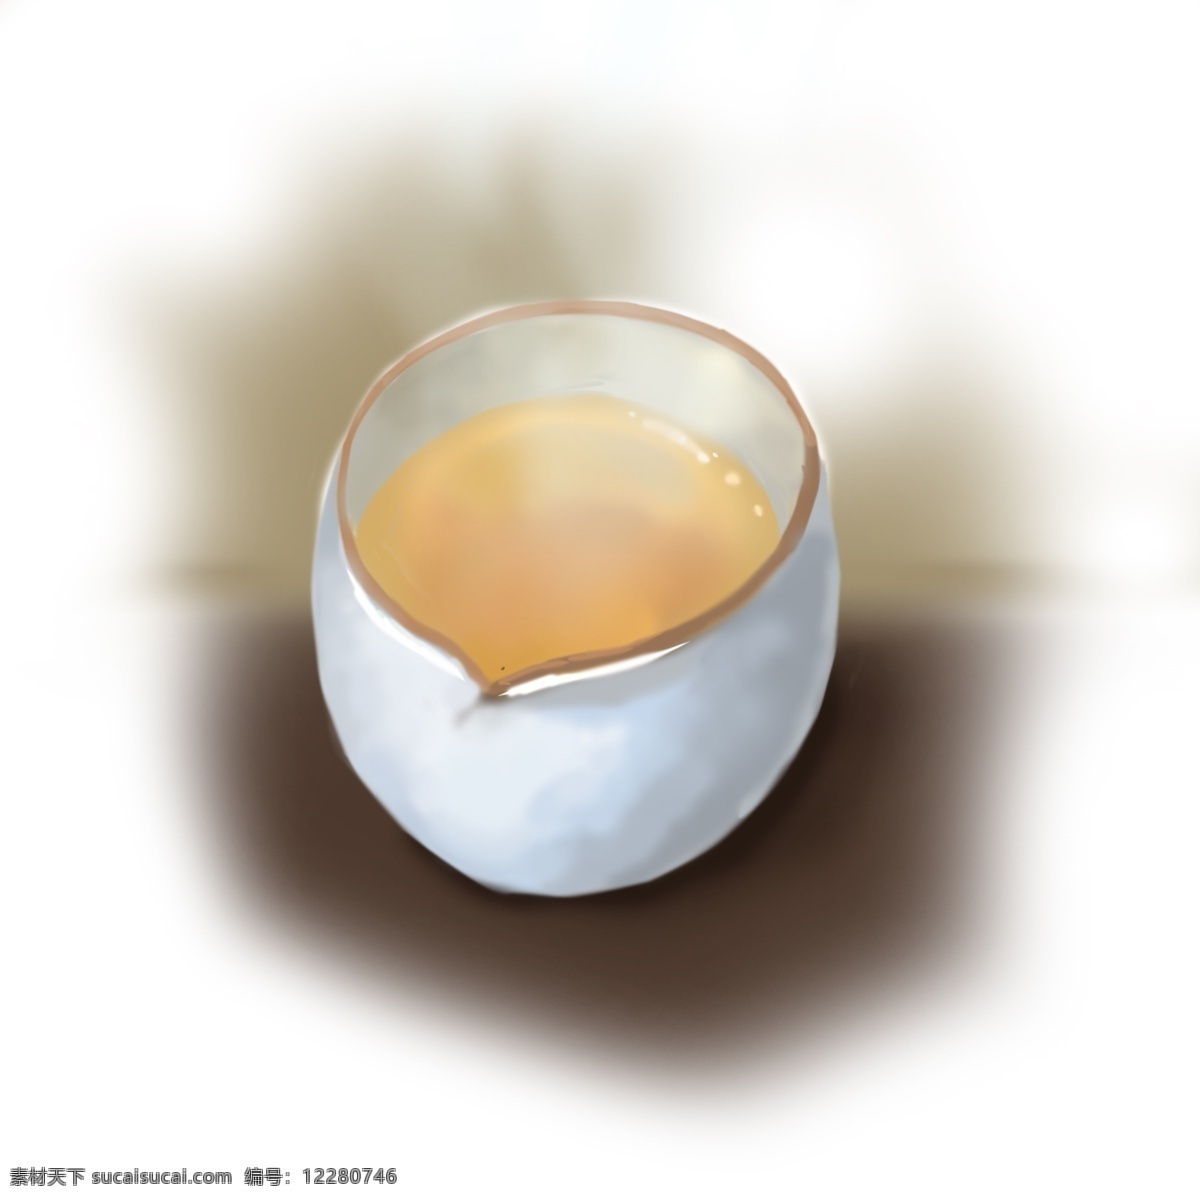 茶 主题 茶水 茶杯 漫 画风 手绘 热茶 白色 瓷杯 茶香 普洱茶 热气腾腾 烟雾 写实风格 静物 插画png